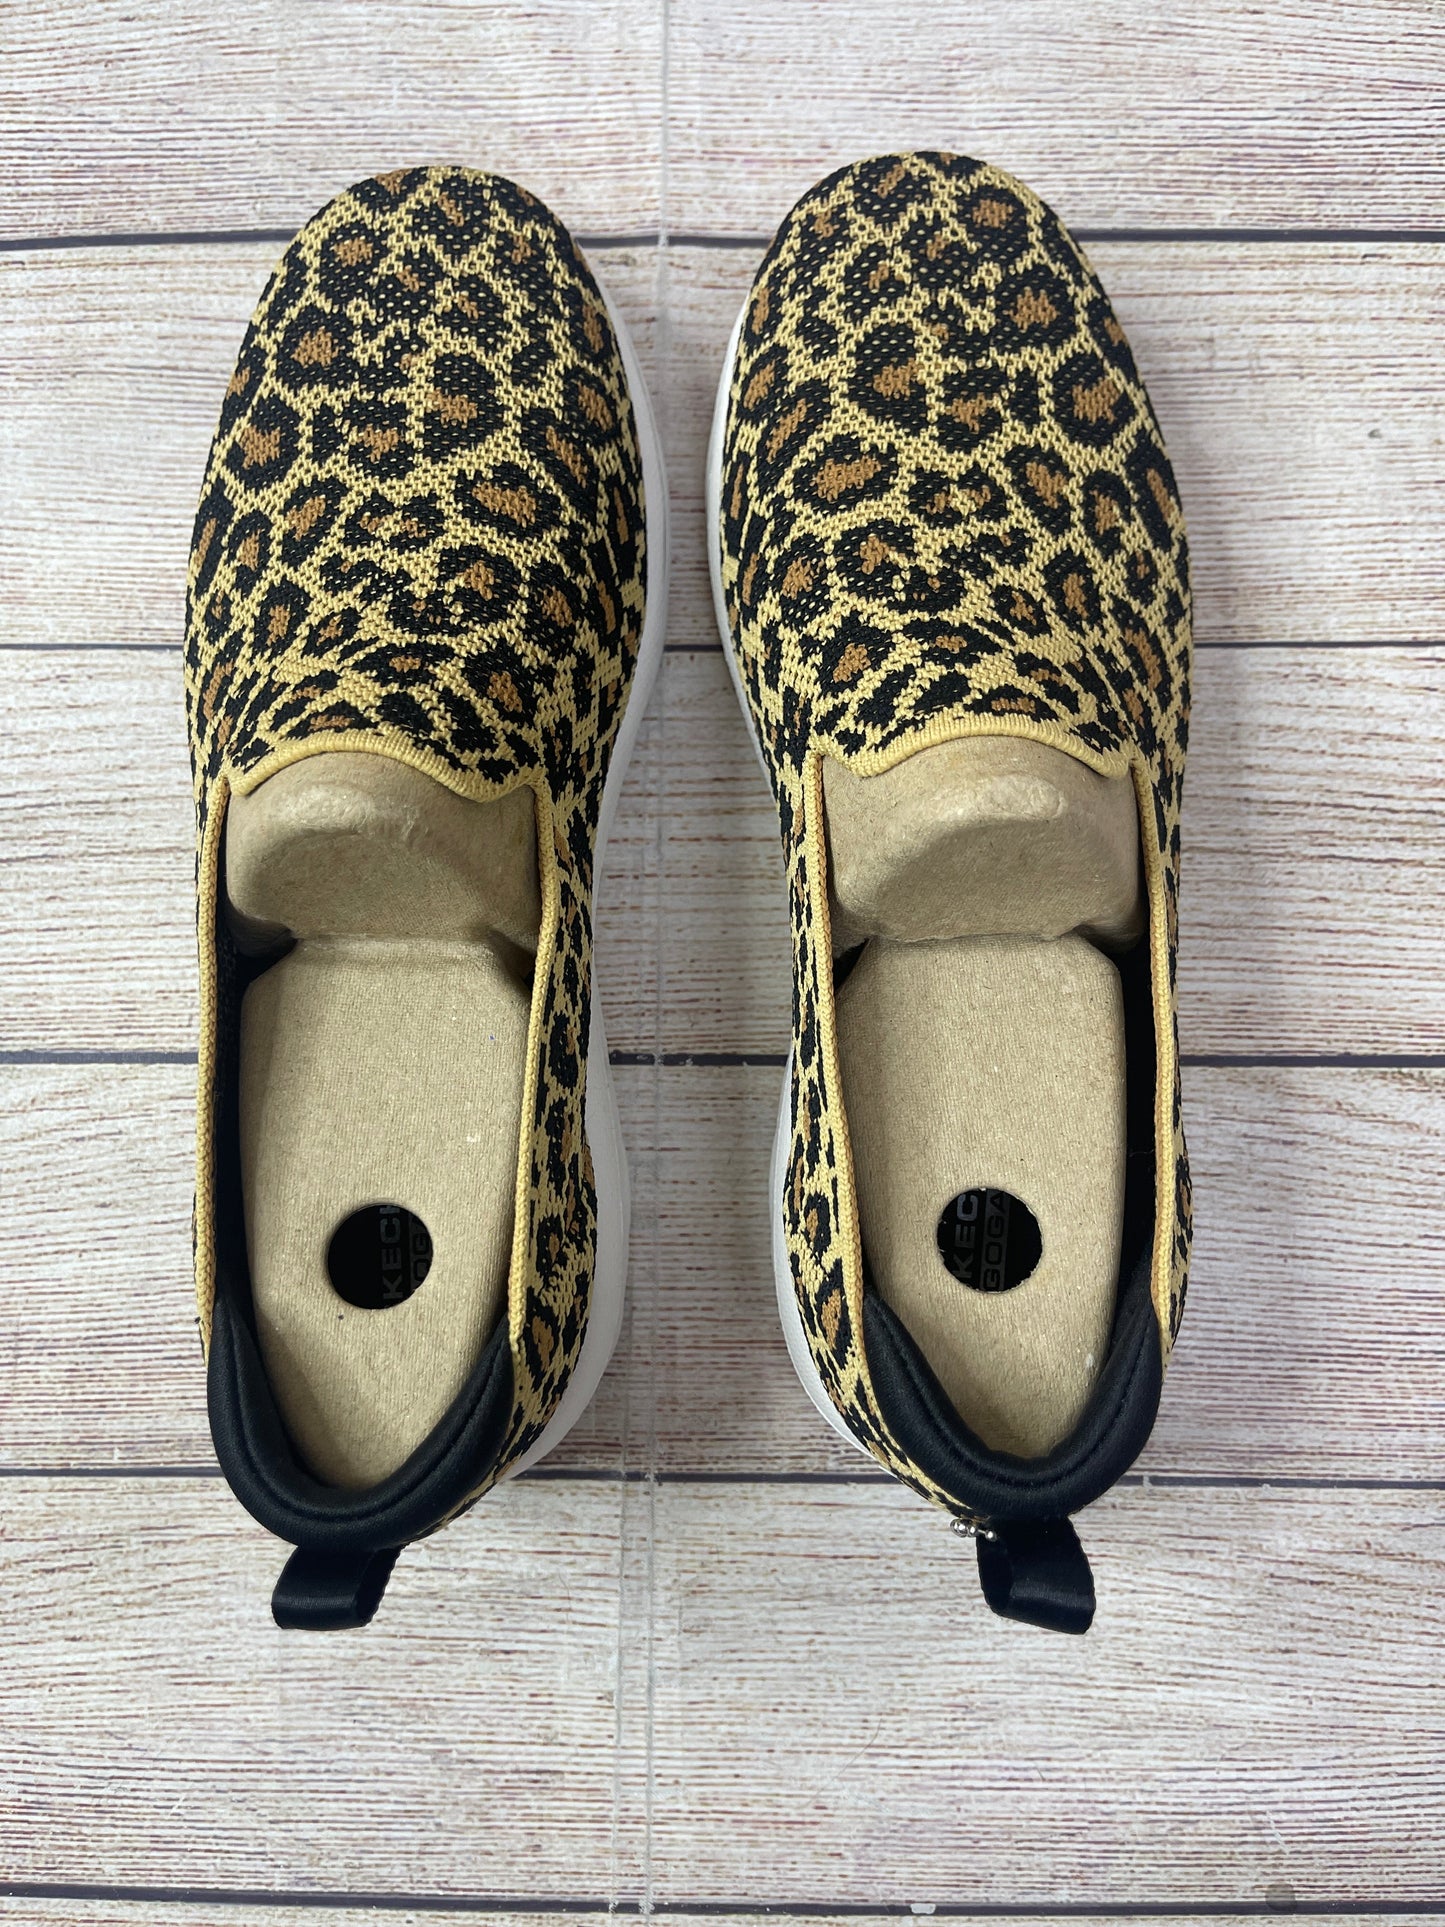 Leopard Print Shoes Flats Skechers, Size 7